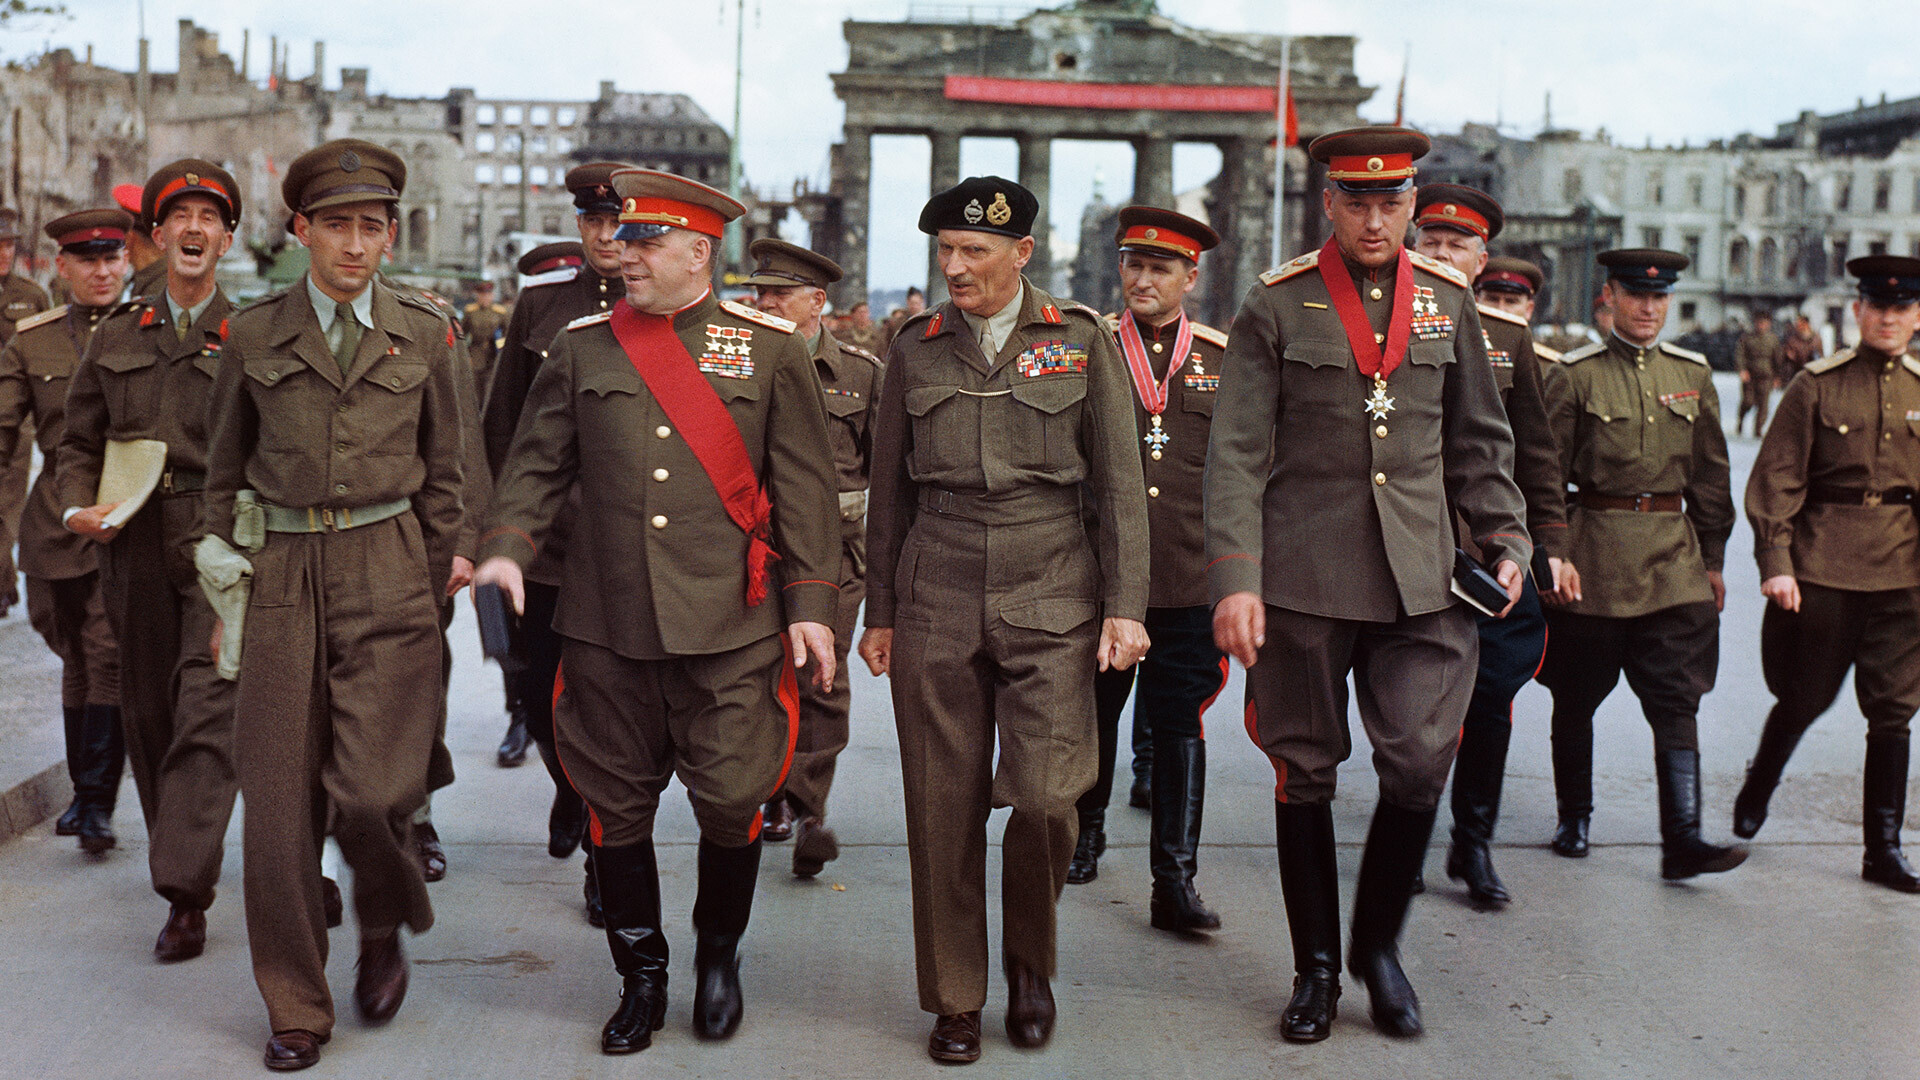 Маршалы Жуков и Рокоссовский, фельдмаршал Монтгомери в Берлине у Бранденбургских ворот, 12 июля 1945 года